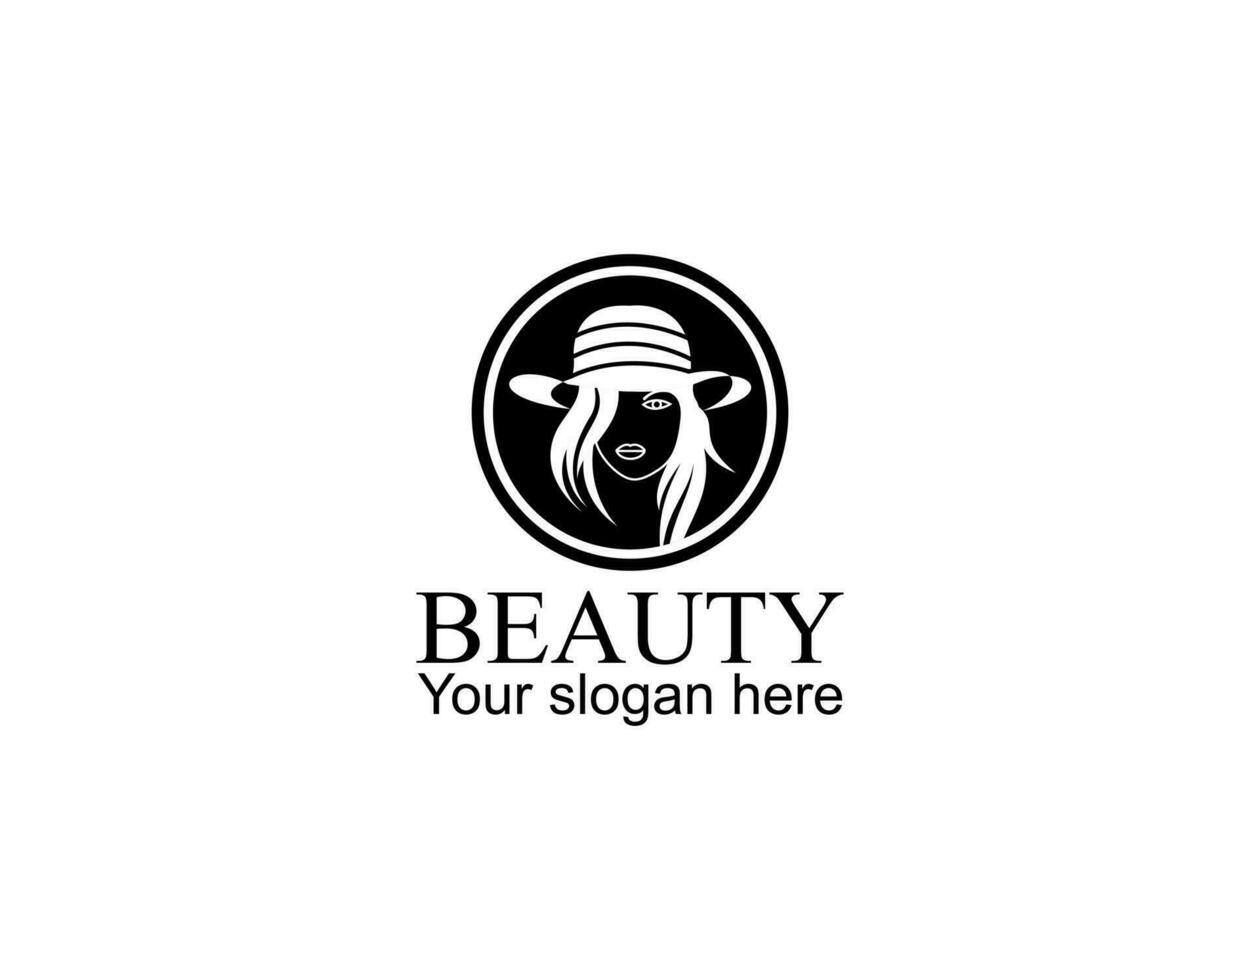 natuurlijk schoonheid salon en haar- behandeling logo vector